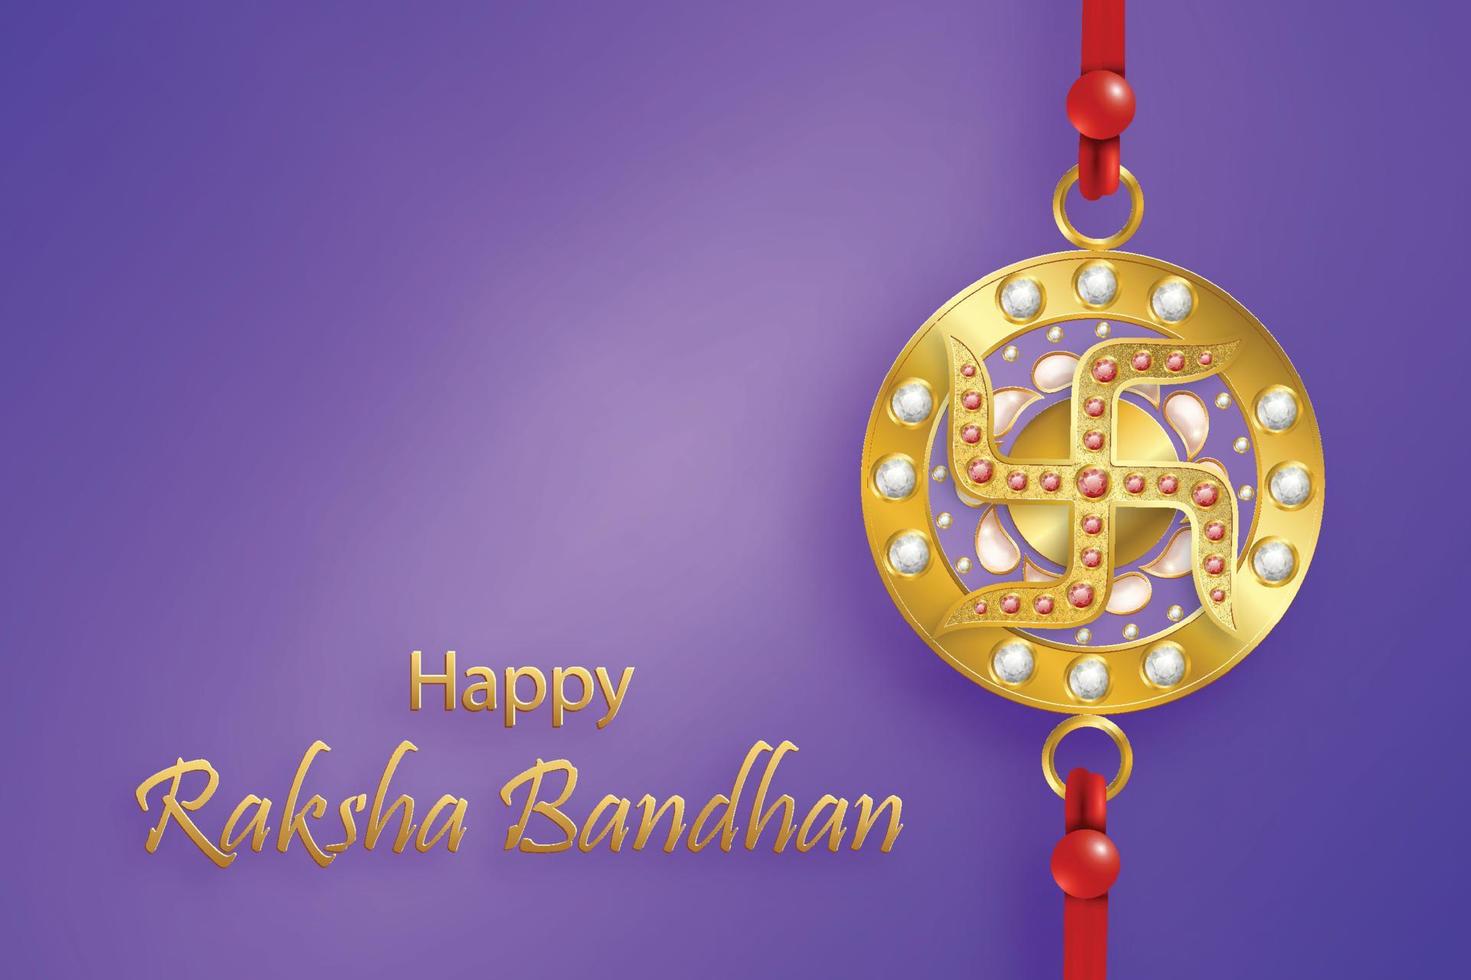 felice raksha bandhan, il festival indiano, con elementi rakhi e cristalli su sfondo colorato vettore